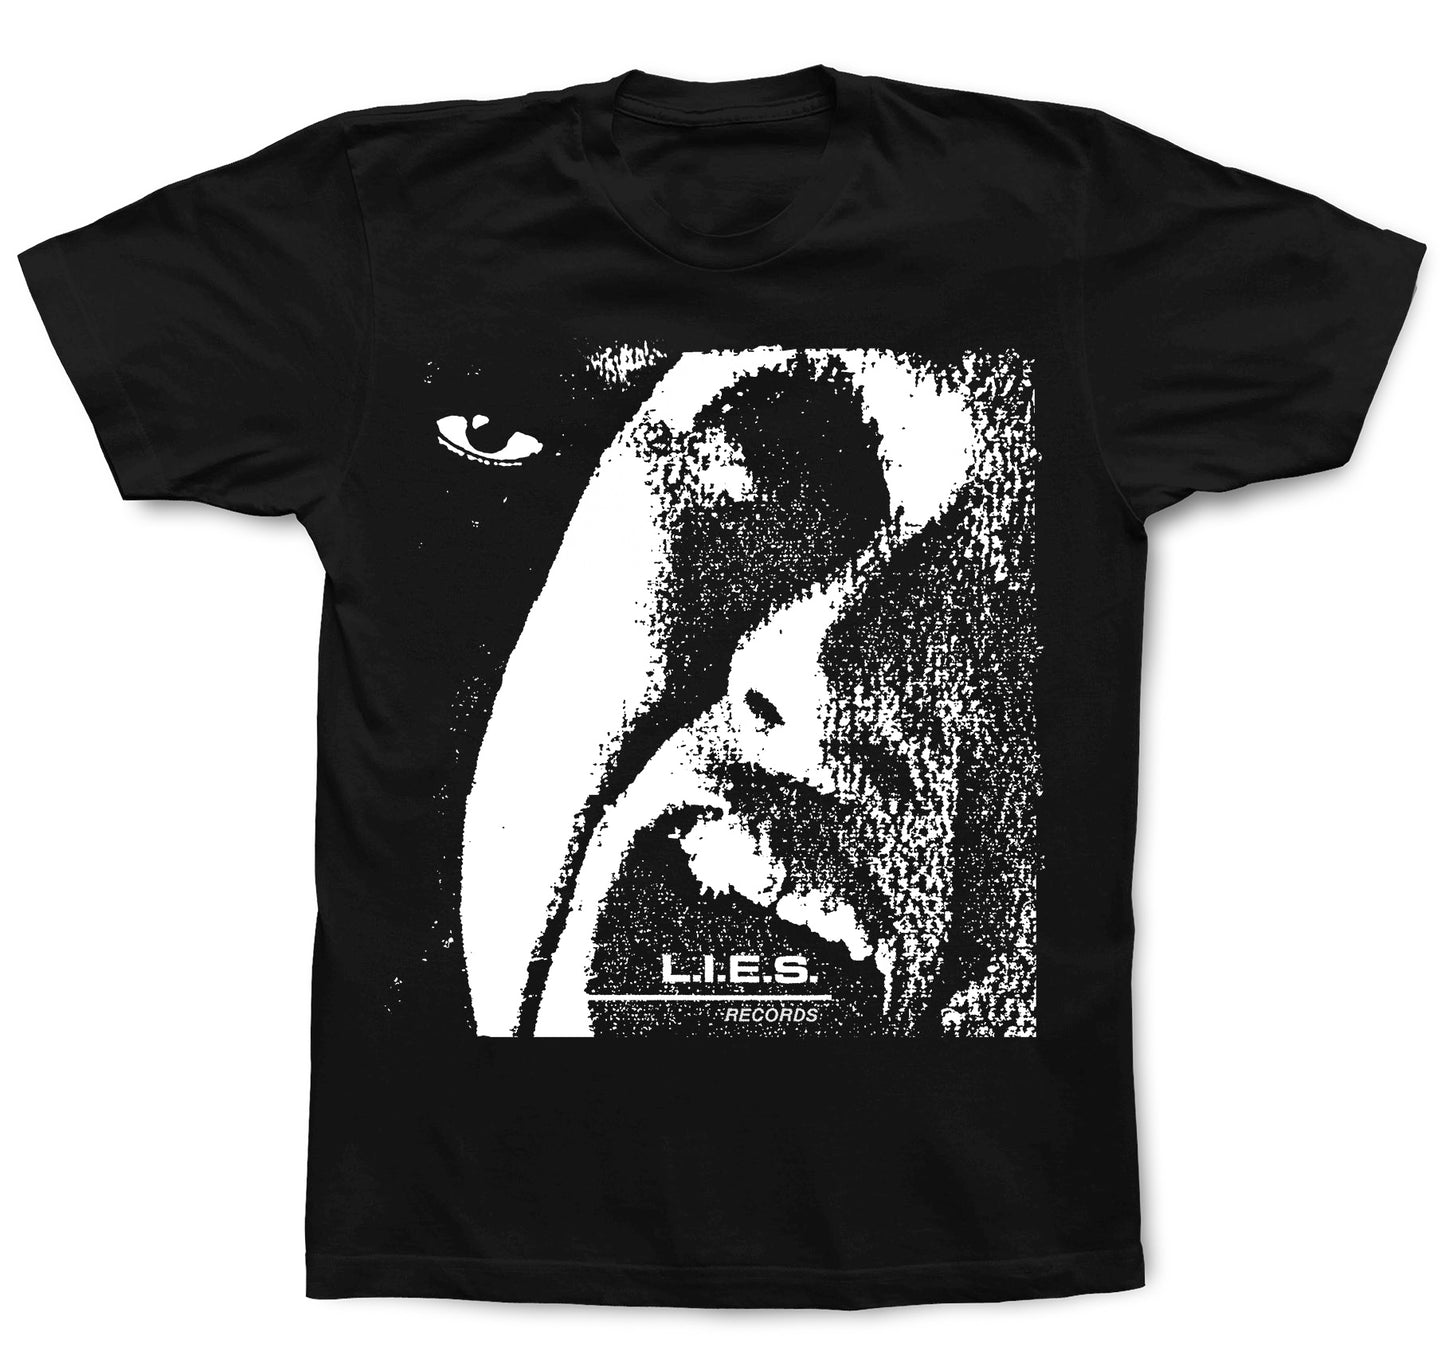 L.I.E.S. Records - Scream in the Night - S/S t-shirt - Black